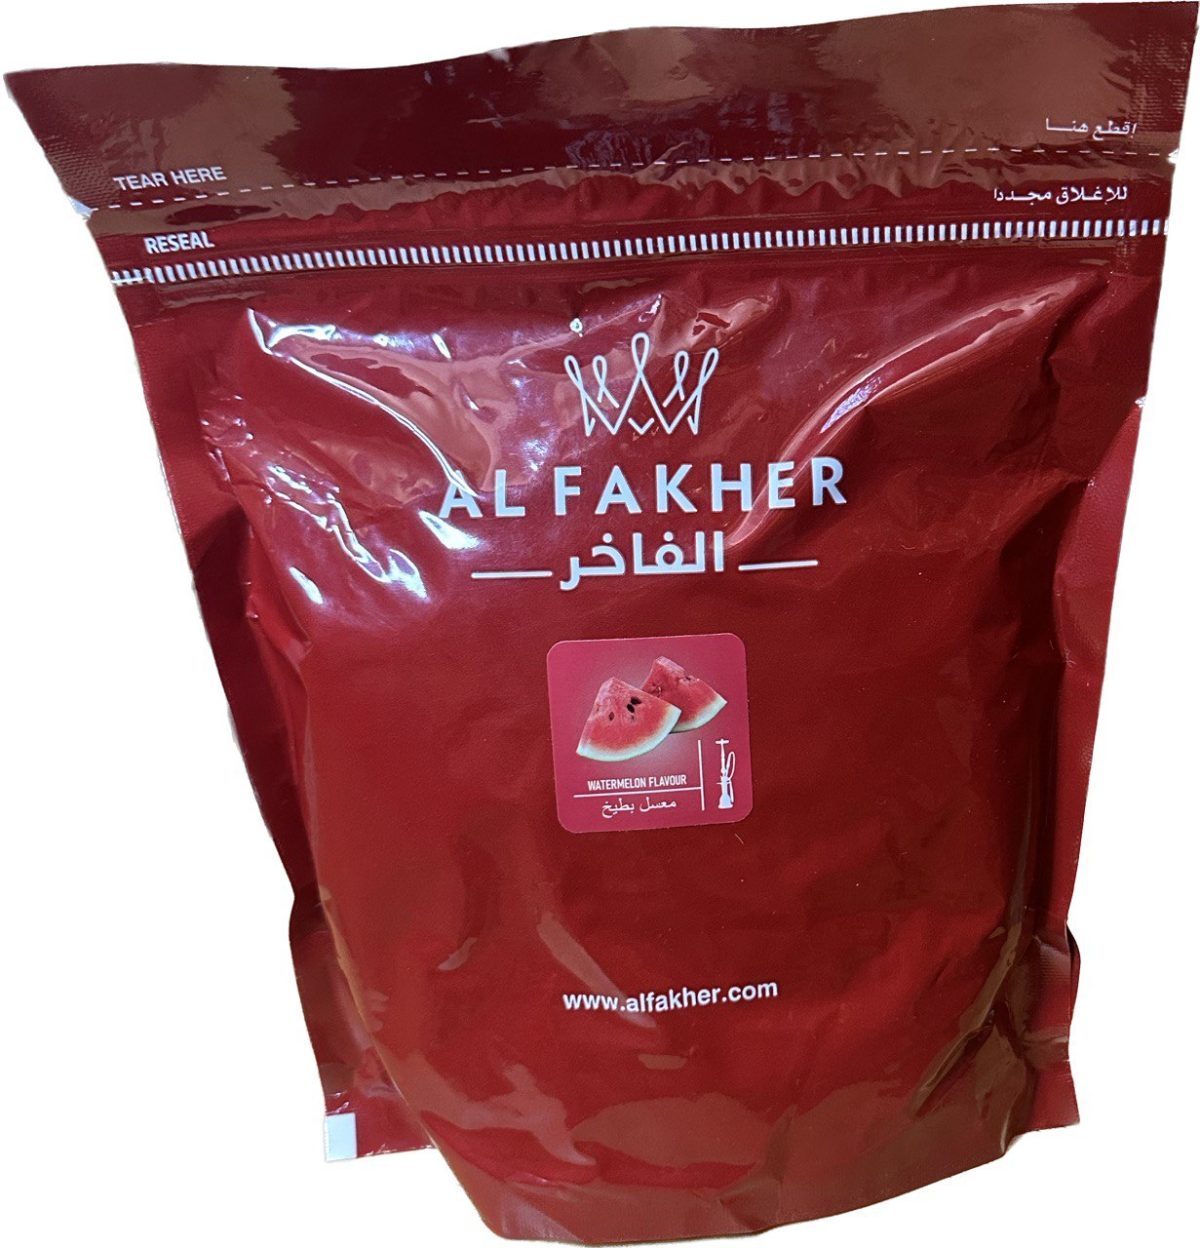 Табак для кальяна Al Fakher — Watermelon (Арбуз) 1000гр фотография 1